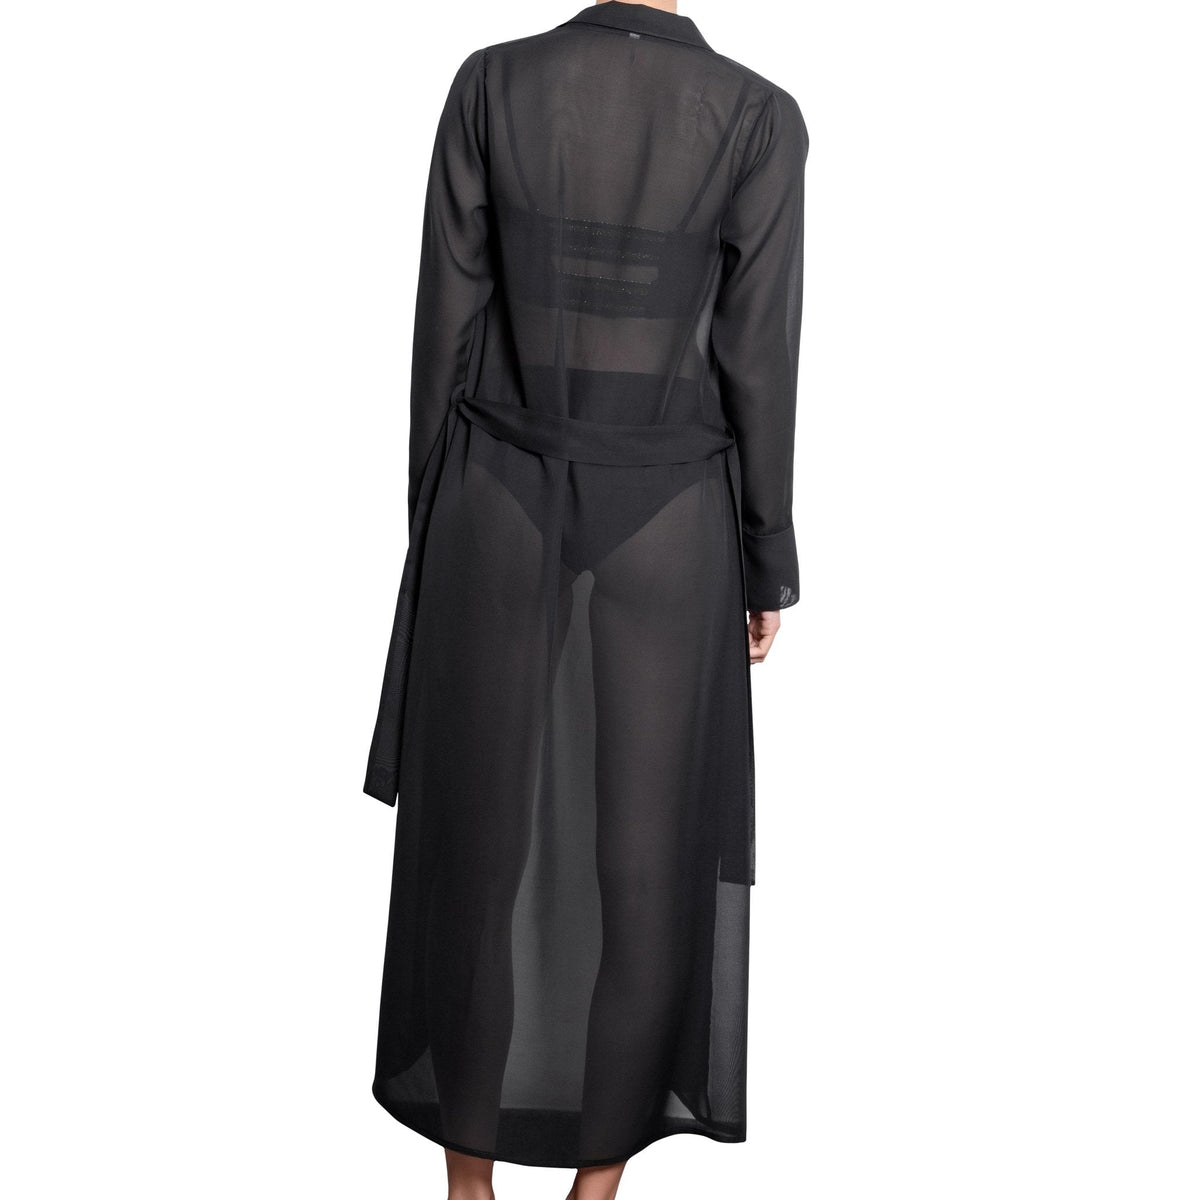 L√âA long shirtdress, black chiffon cover up by ALMA swimwear ‚Äì back view